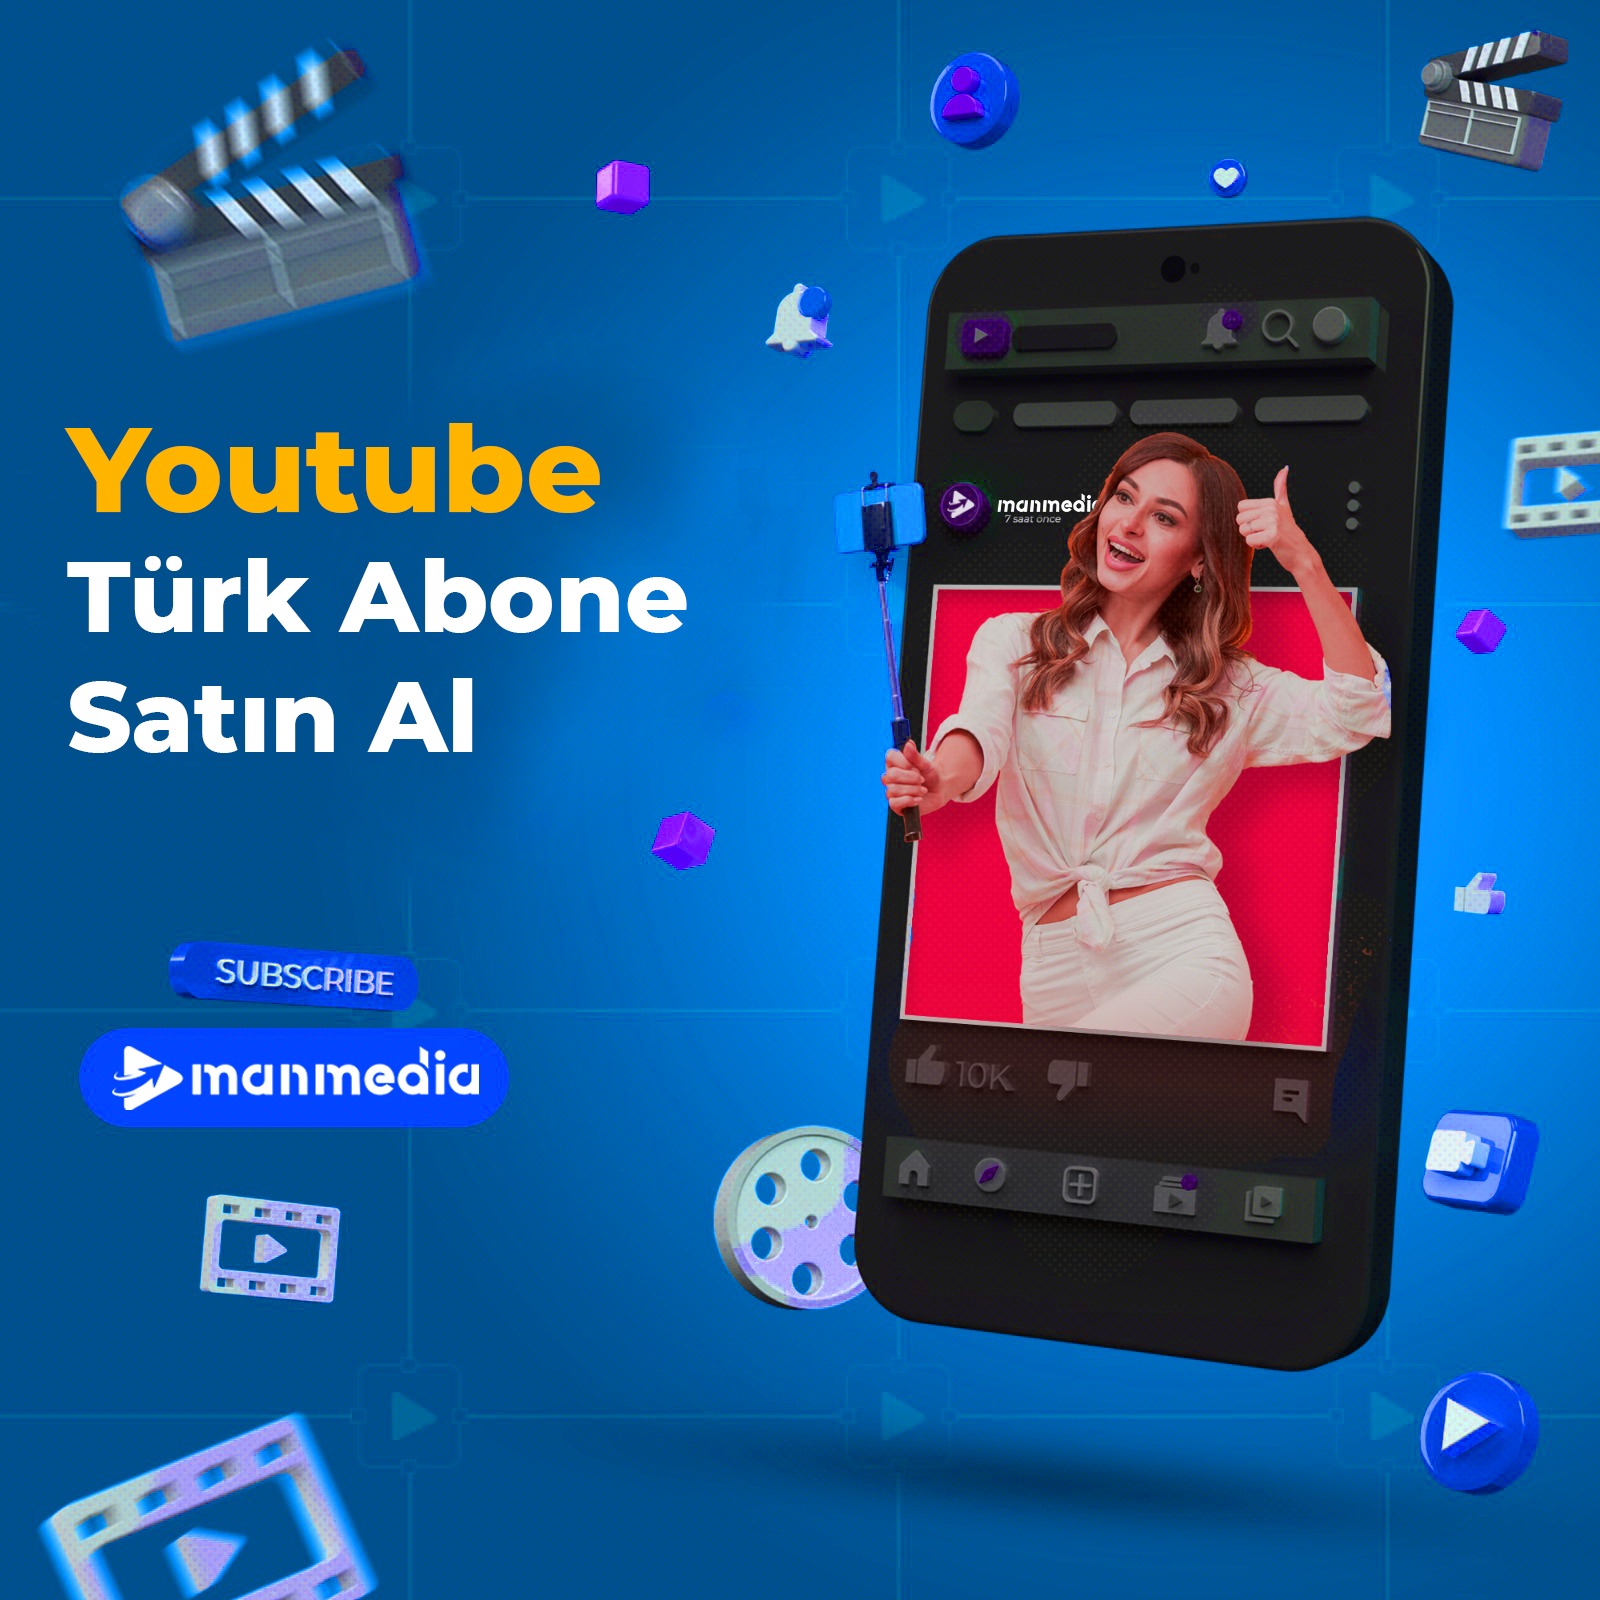 Youtube Türk abone satın al